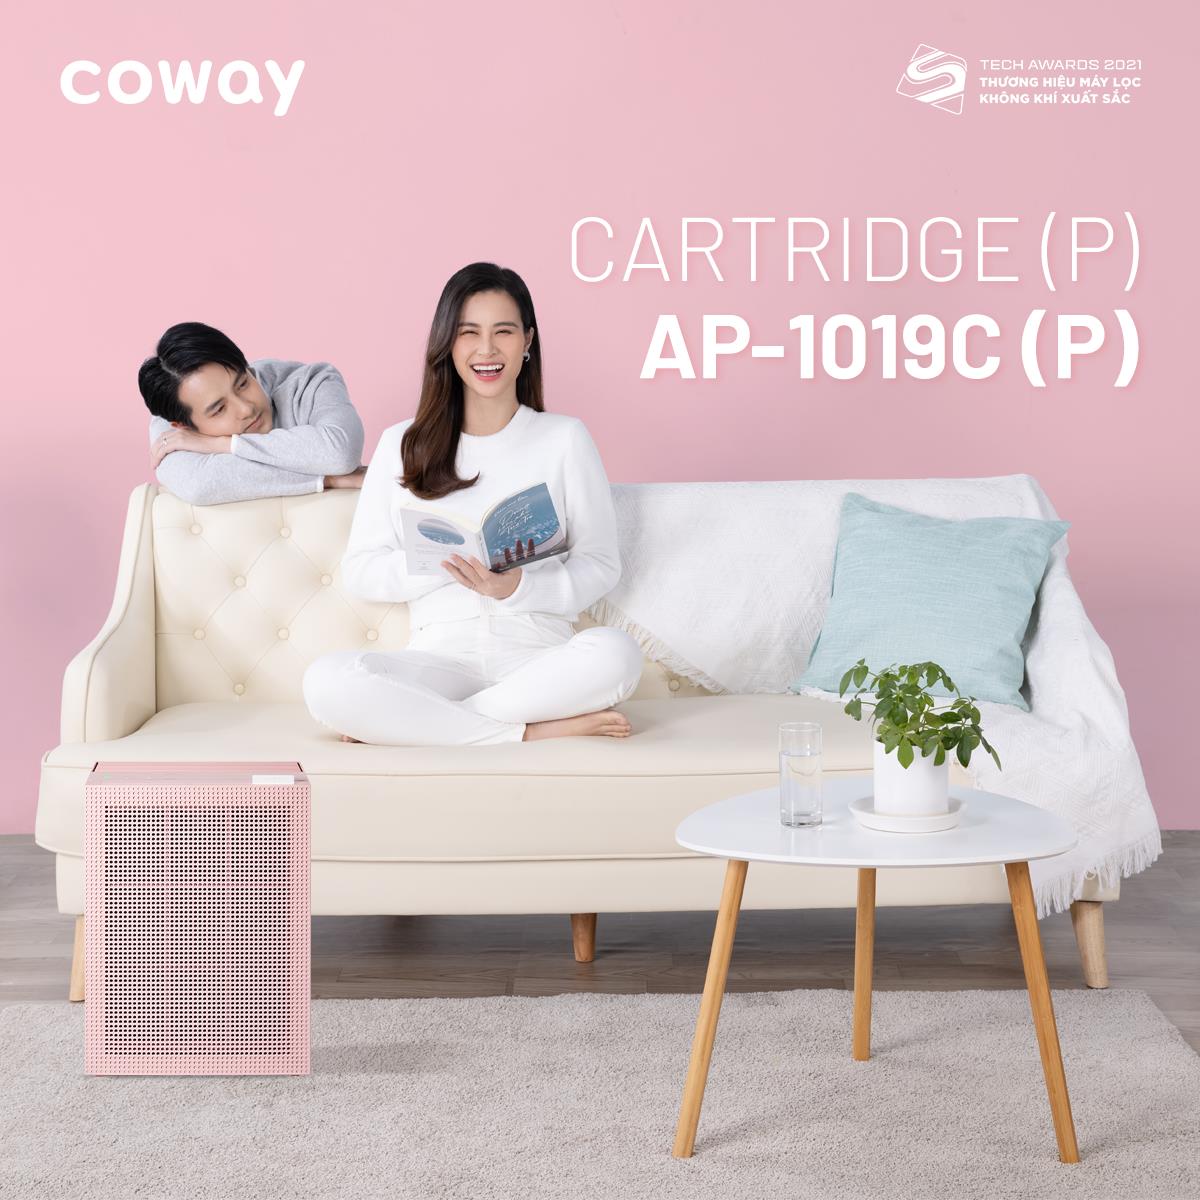 Coway – thương hiệu máy lọc không khí xuất sắc nhất Tech Awards 2021 ra mắt 2 siêu phẩm lọc không khí mới - Ảnh 3.